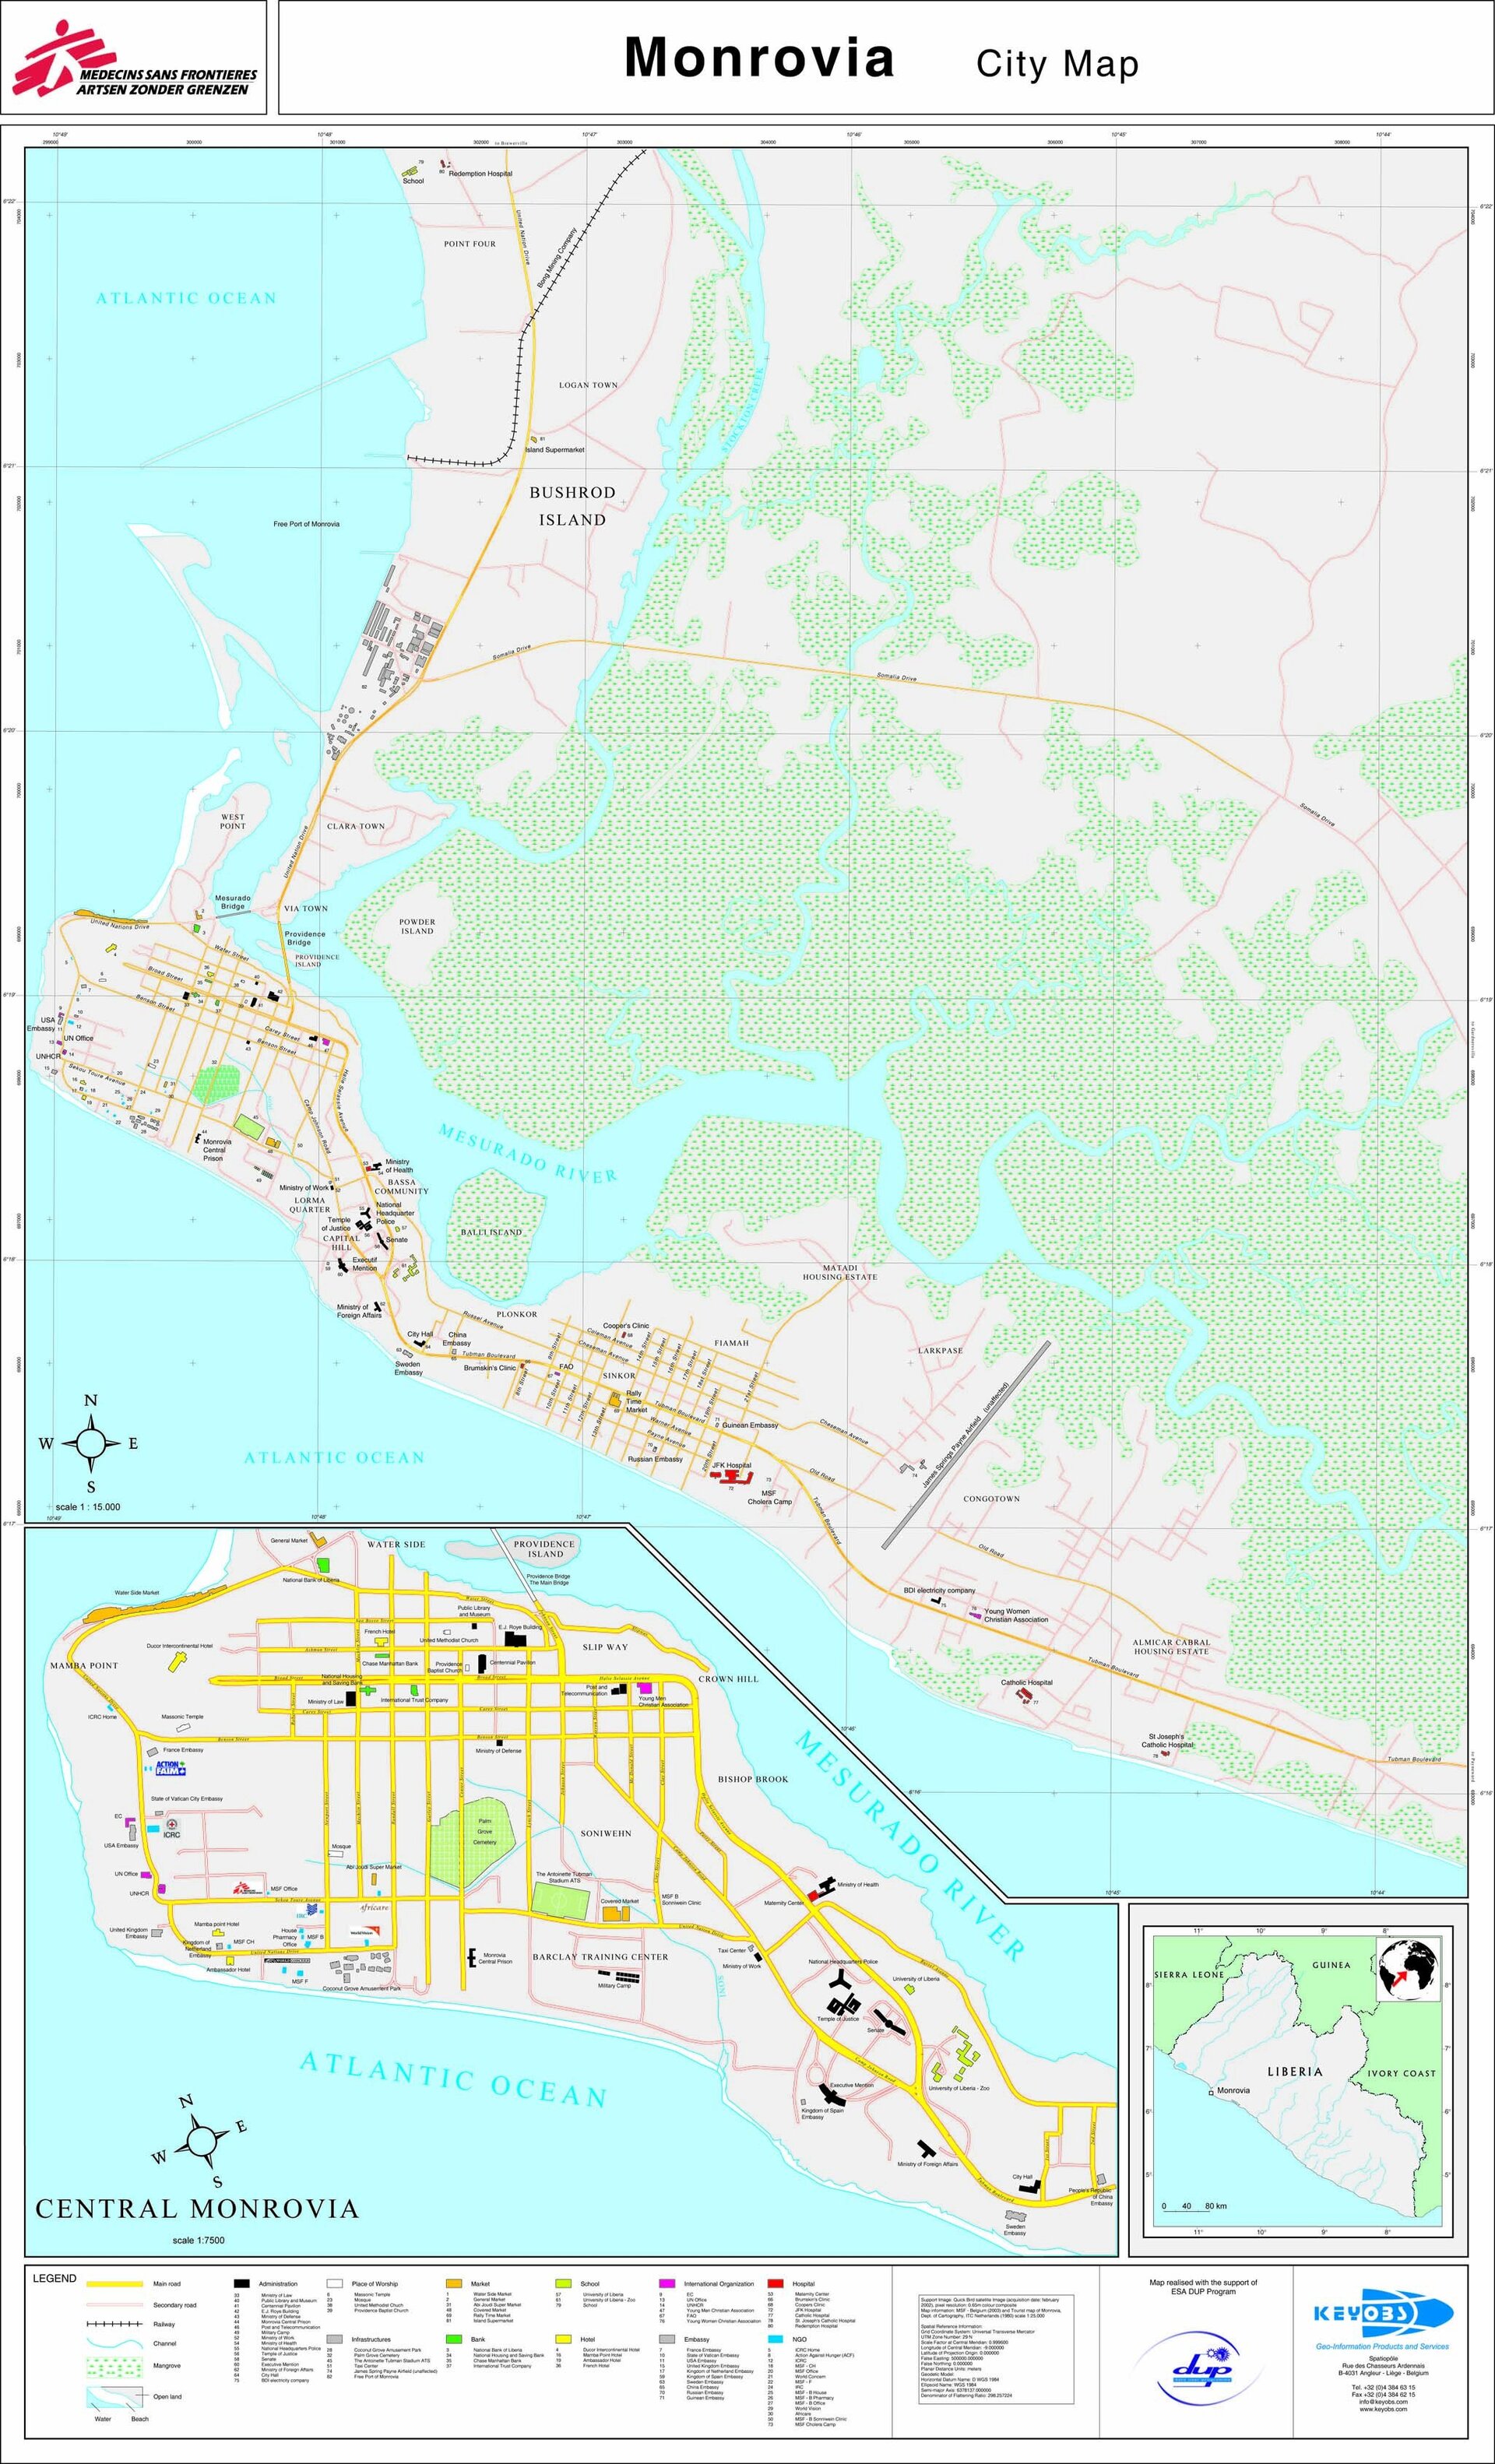 La mappa usata da MSF, basata sulle immagini satellitare